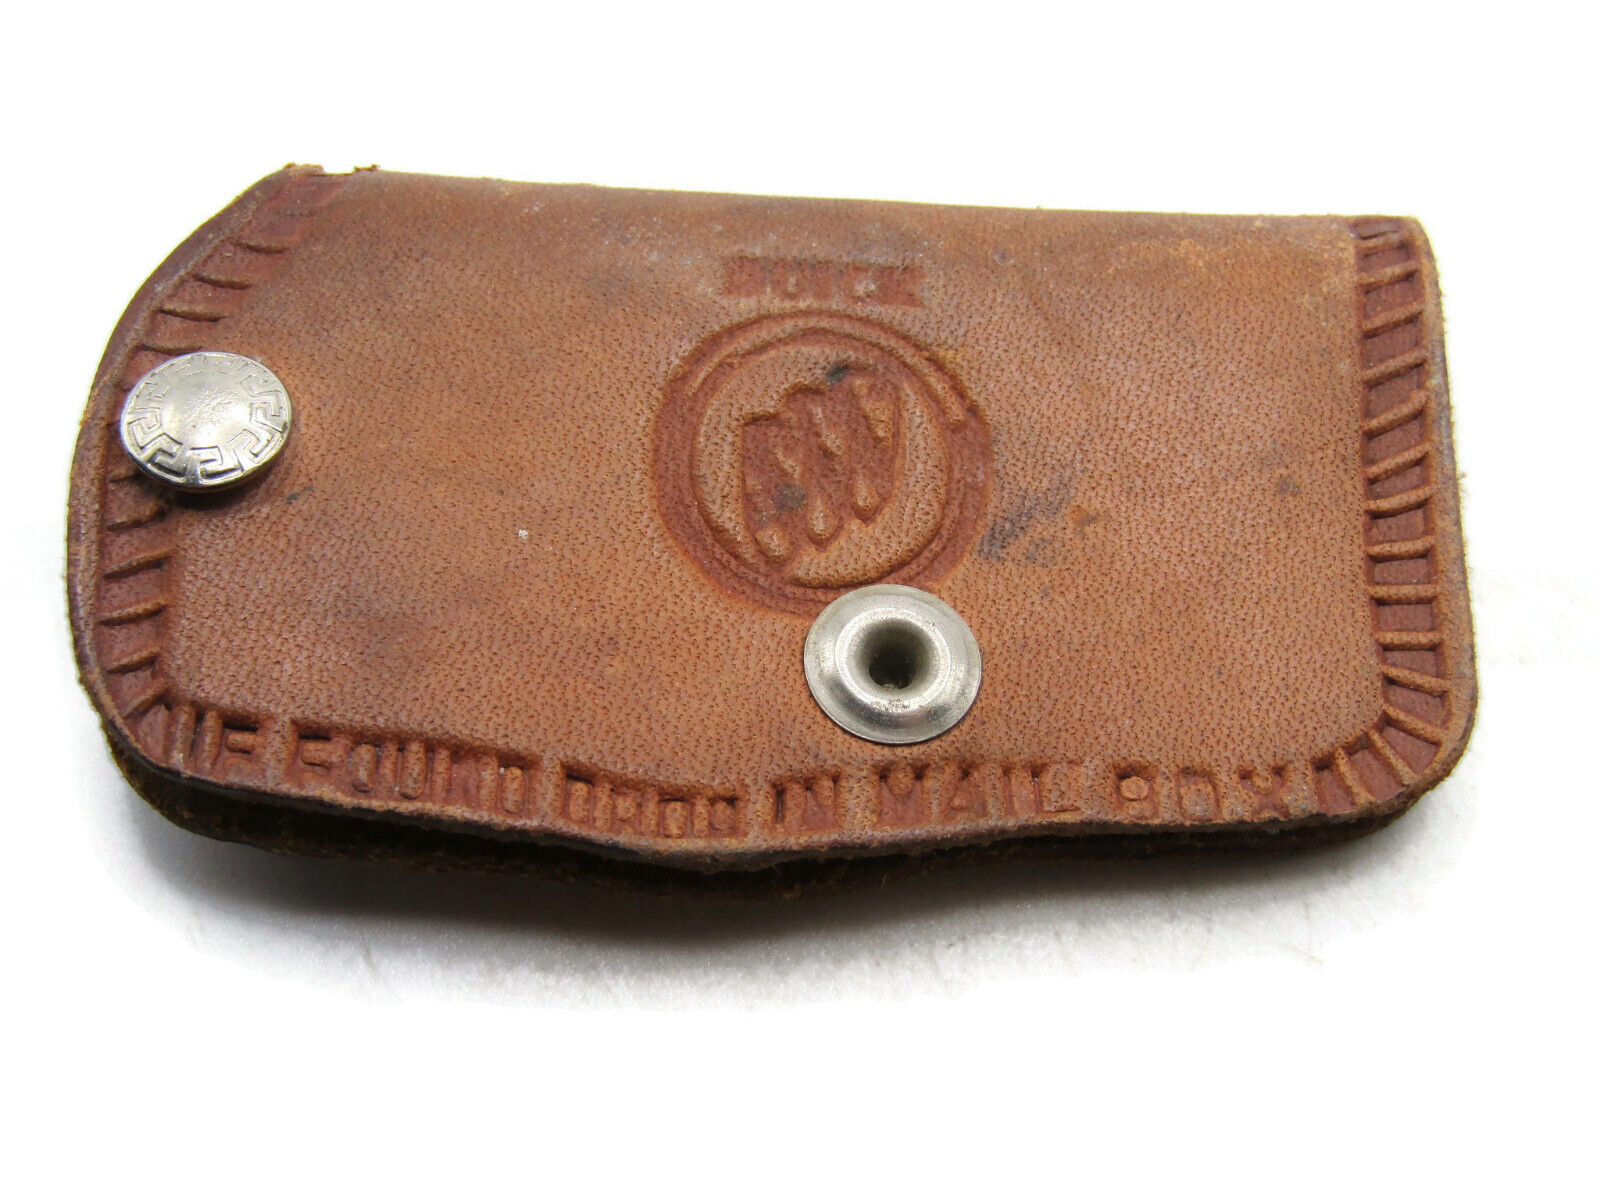 Buick Logo Key Case Holder Brown Leather Vintage